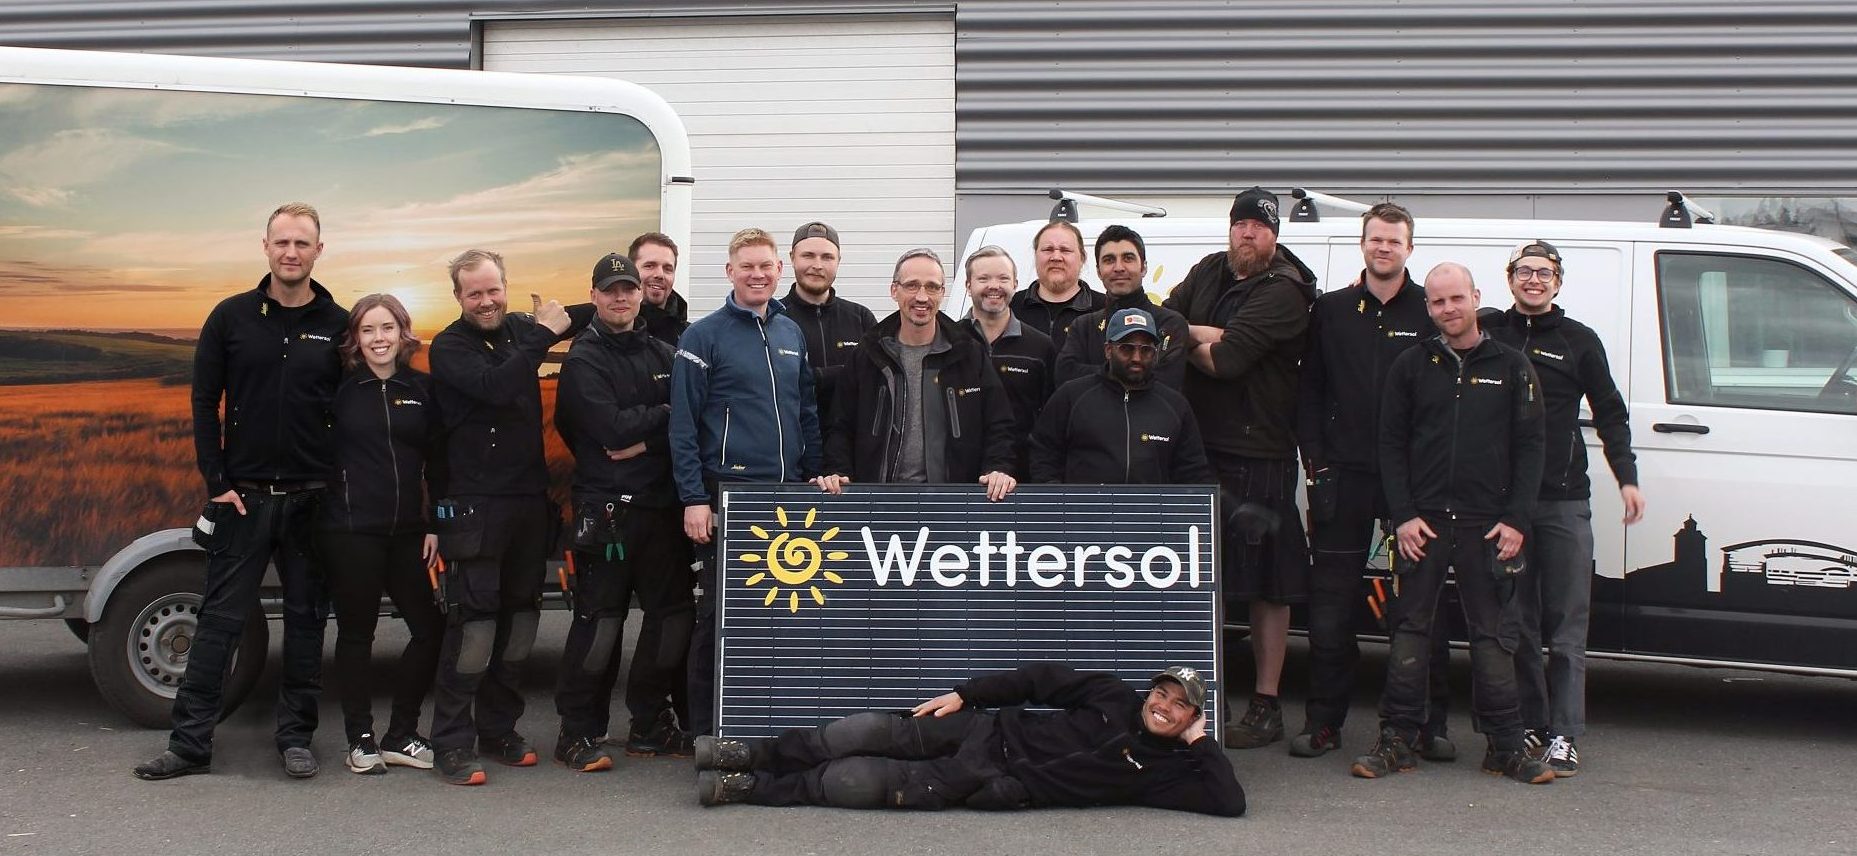 Wettersol AB installerar solceller, solpaneler och laddboxar i Jönköping